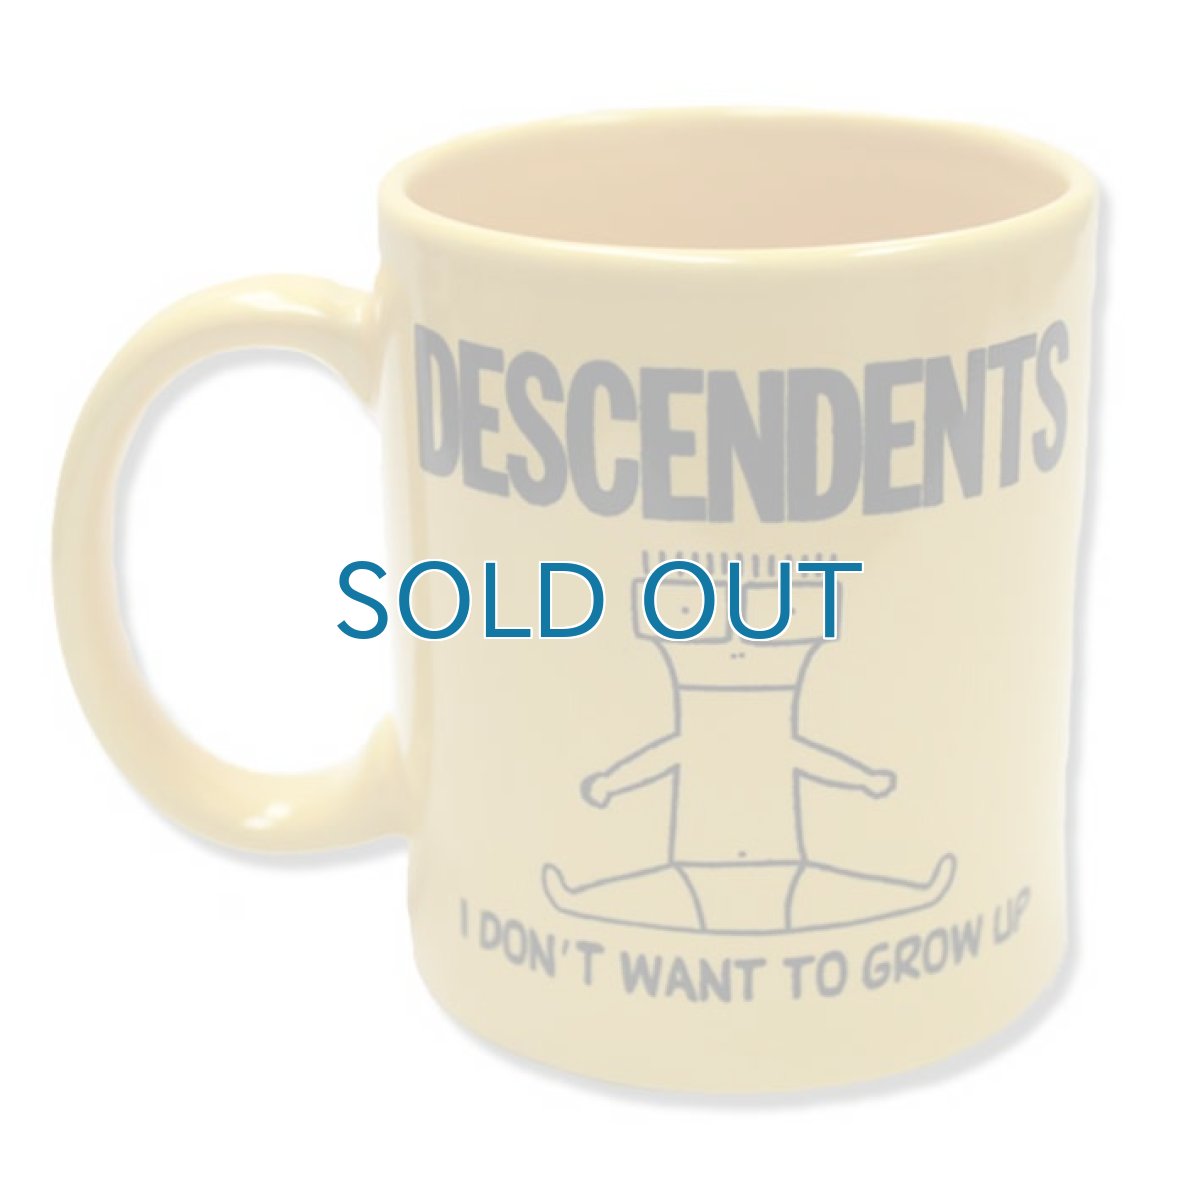 画像1: Descendents / I Don't Want To Grow Up マグカップ (1)